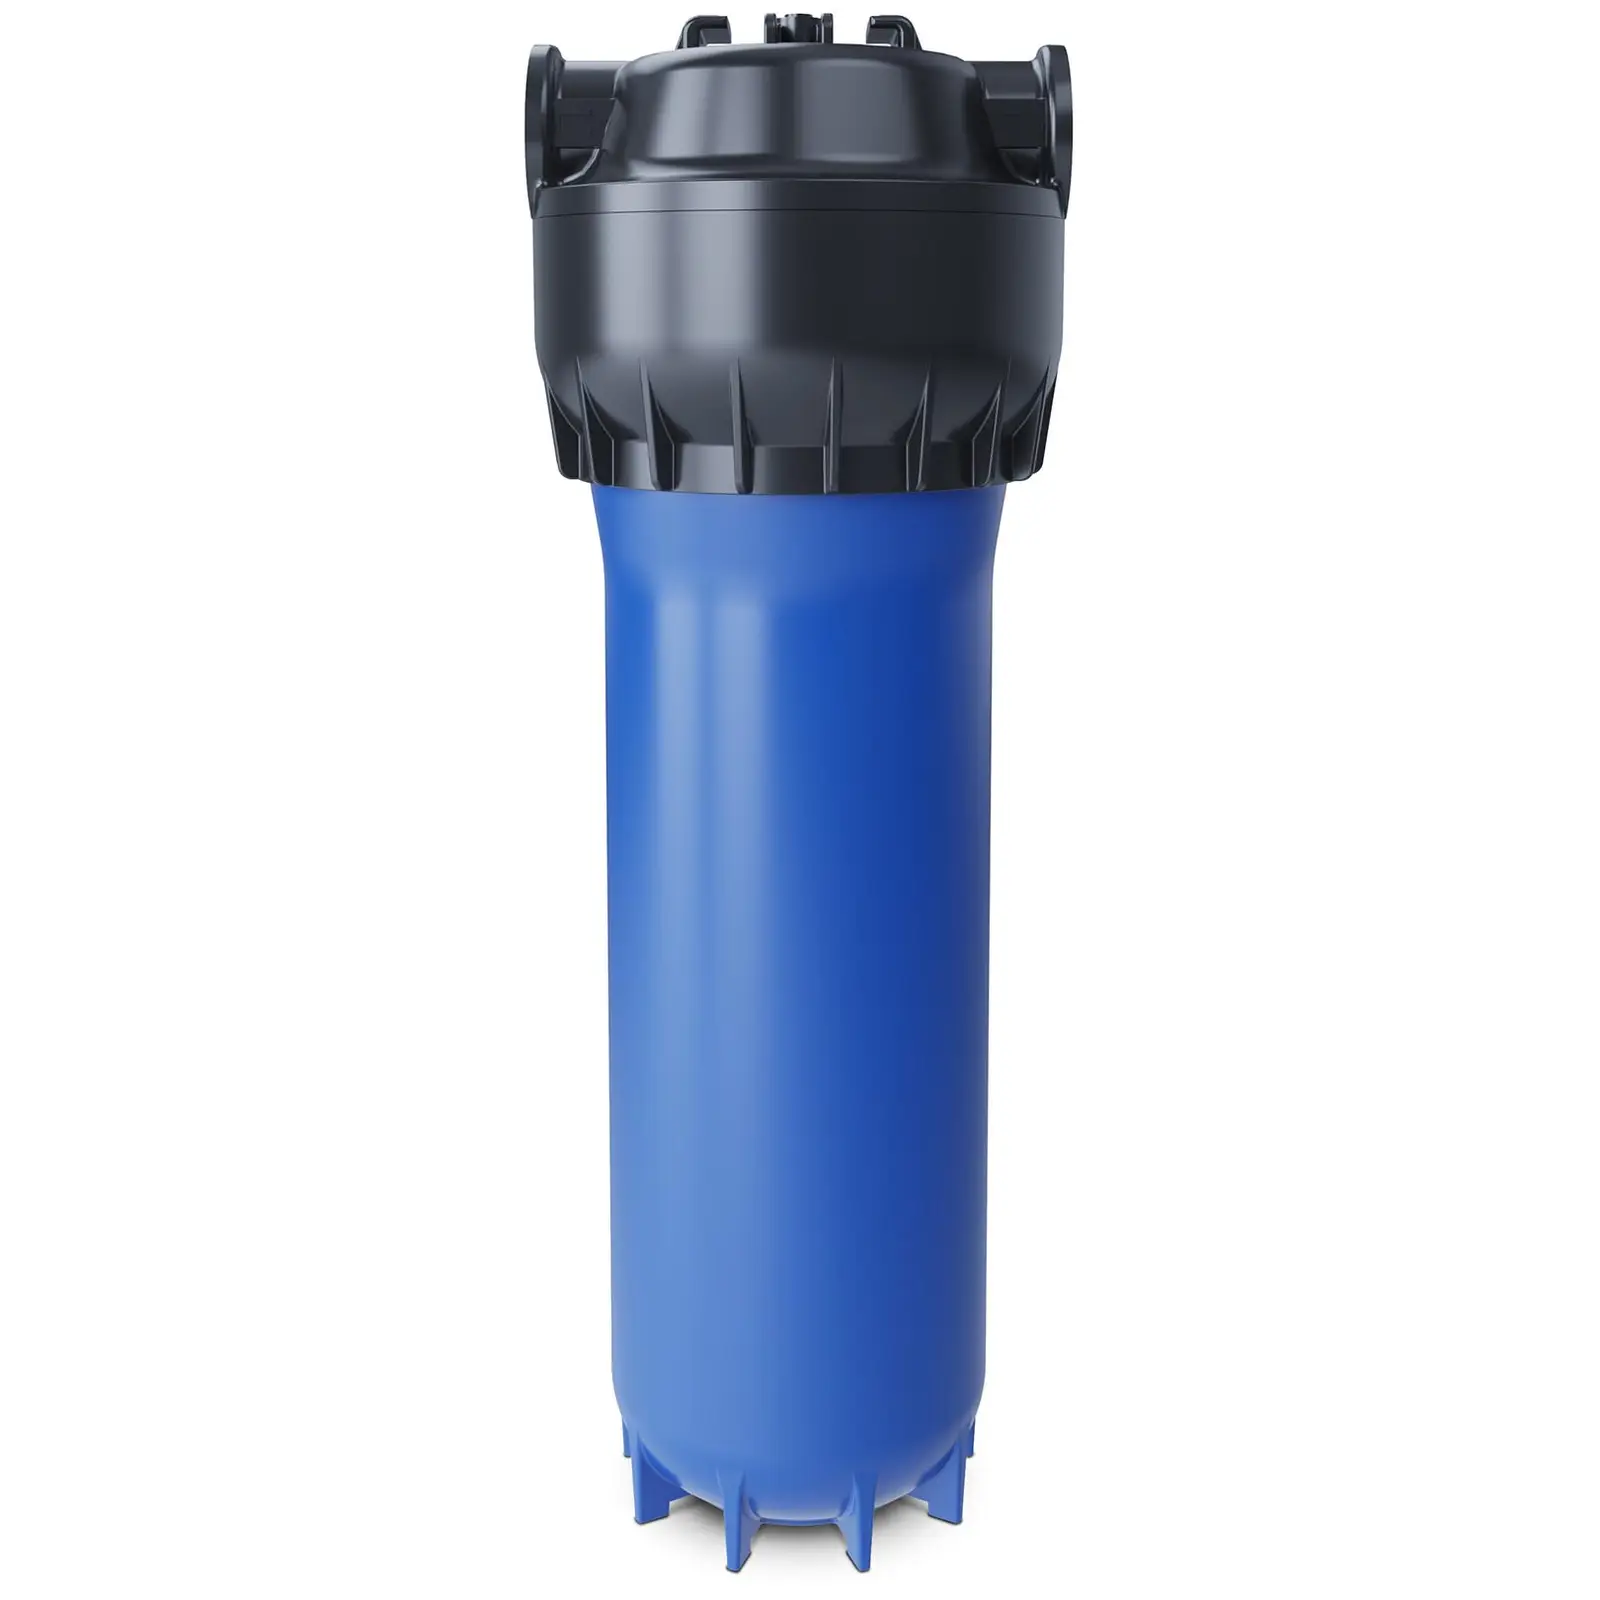 Pouzdro filtru Aquaphor pro filtrační vložku - 10”- včetně hrubého filtru